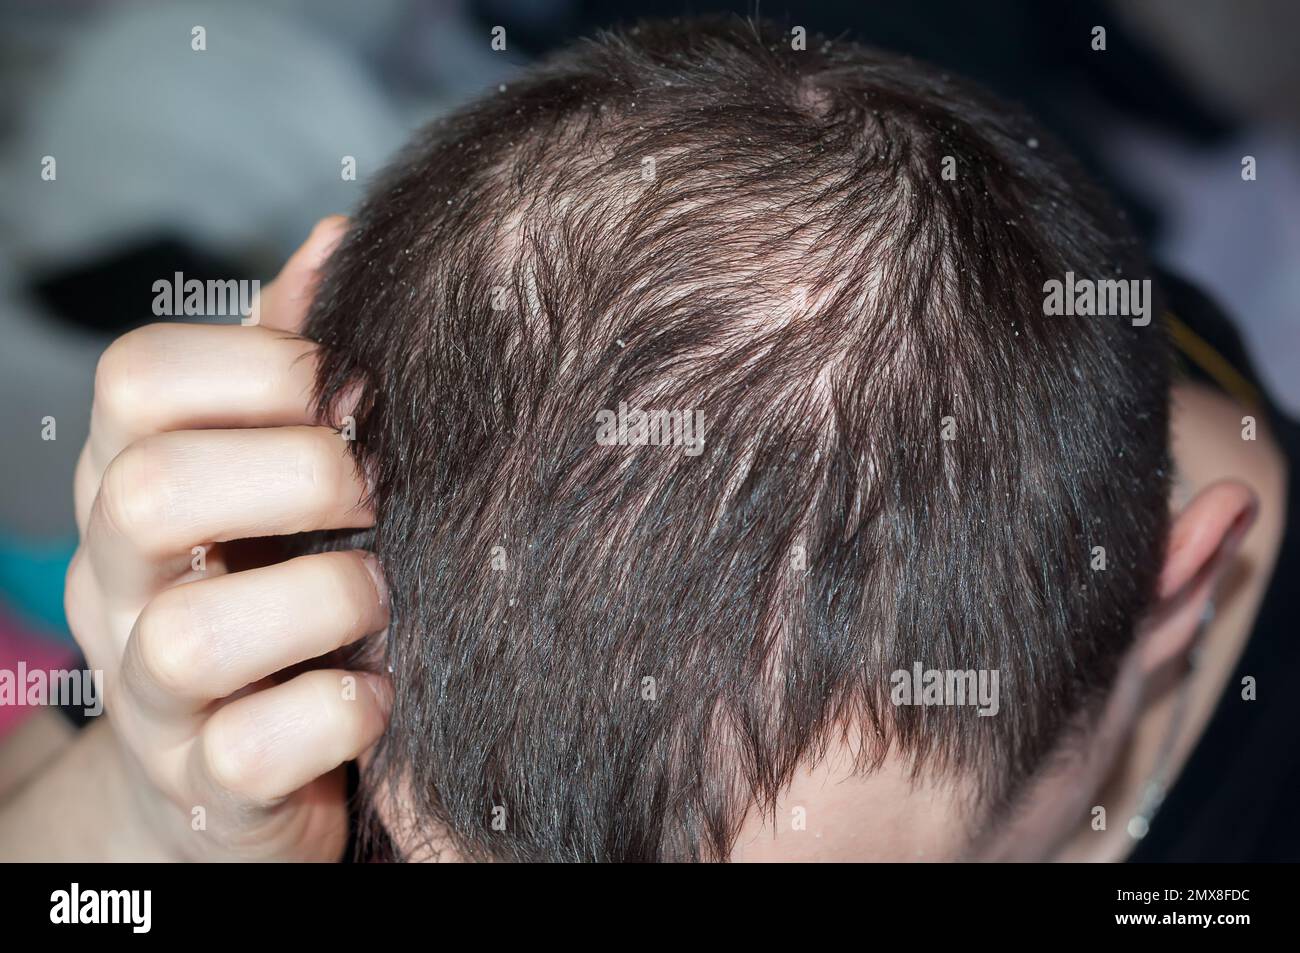 Schuppen bei einem Mann und Haarausfall. Männlicher Kopf mit kurzen Haaren und kahlem Kopf. Seborrhoe ist eine Erkrankung des Nervensystems Stockfoto